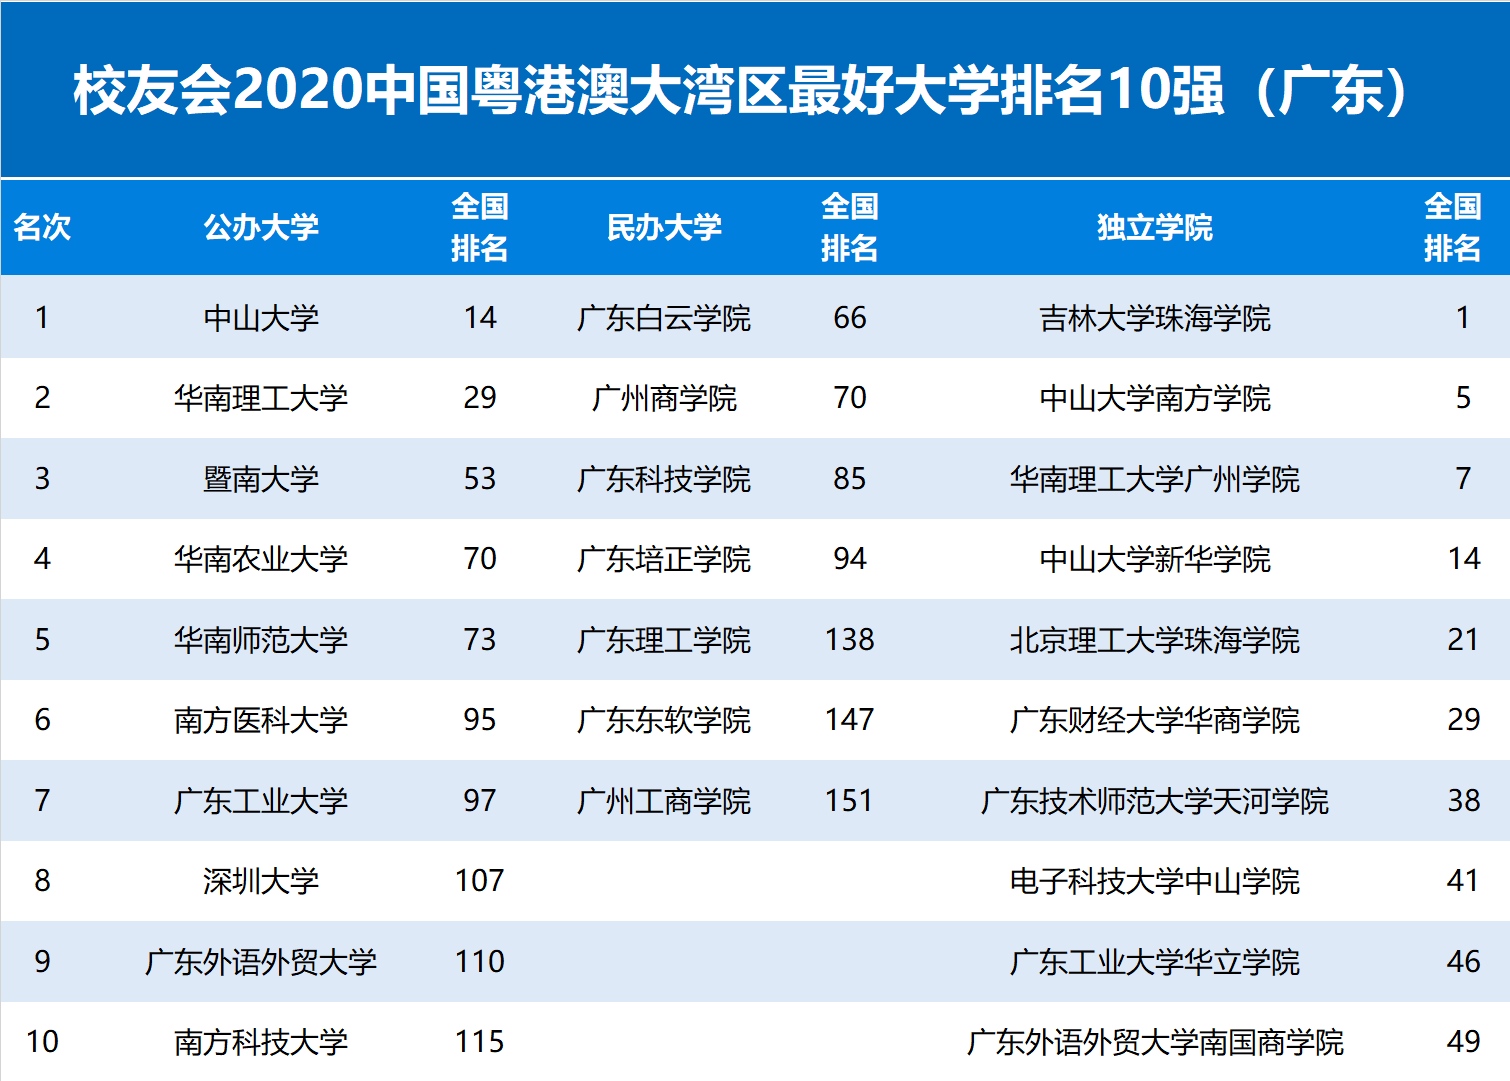 2020暨南大学排名_2020广州市大学综合排名:中山大学获得榜首,暨南大学第